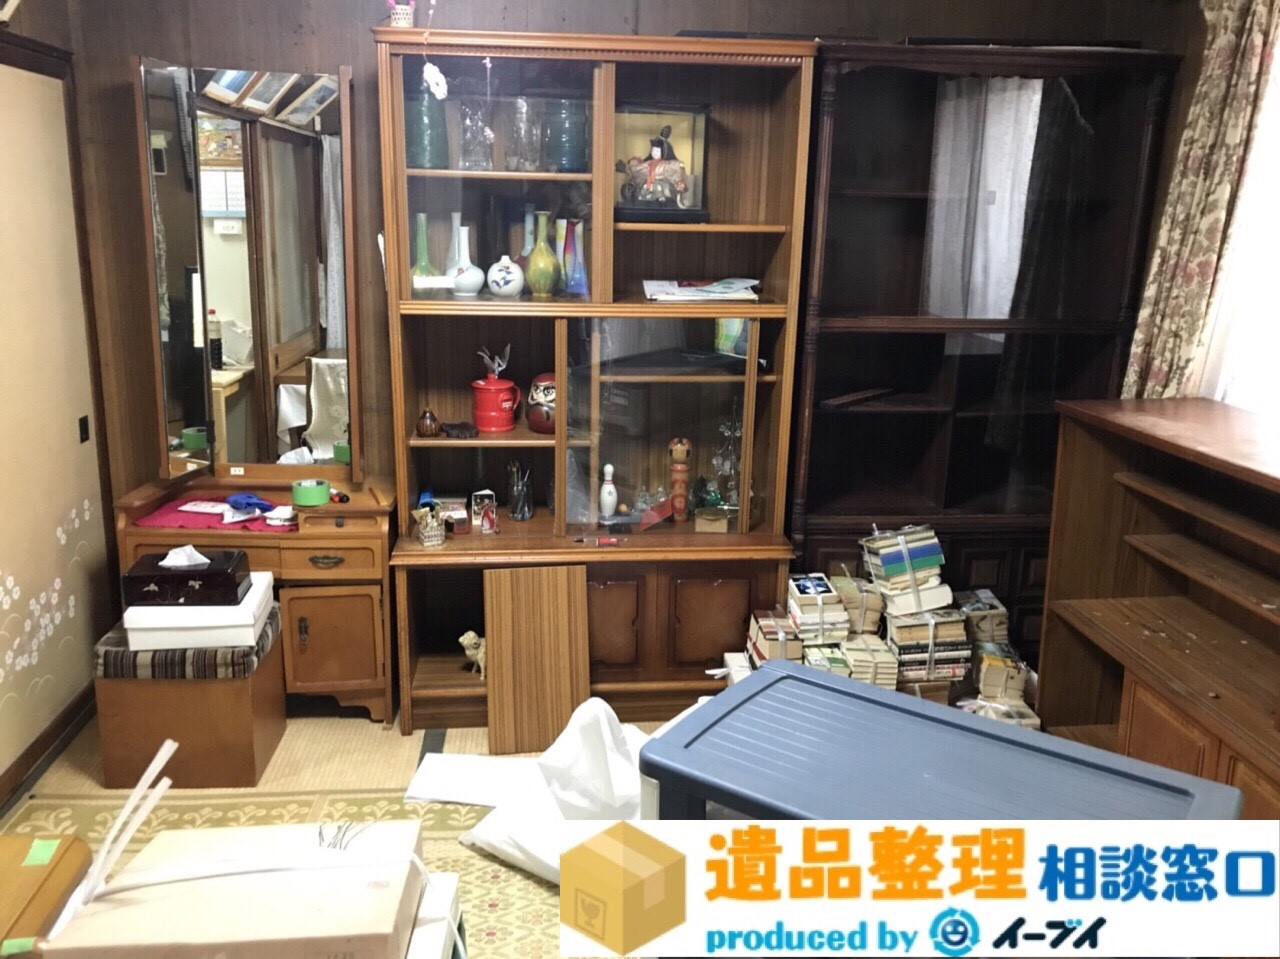 京都府八幡市で遺品整理に伴い家具や生活用品の処分をしました。のアイキャッチ